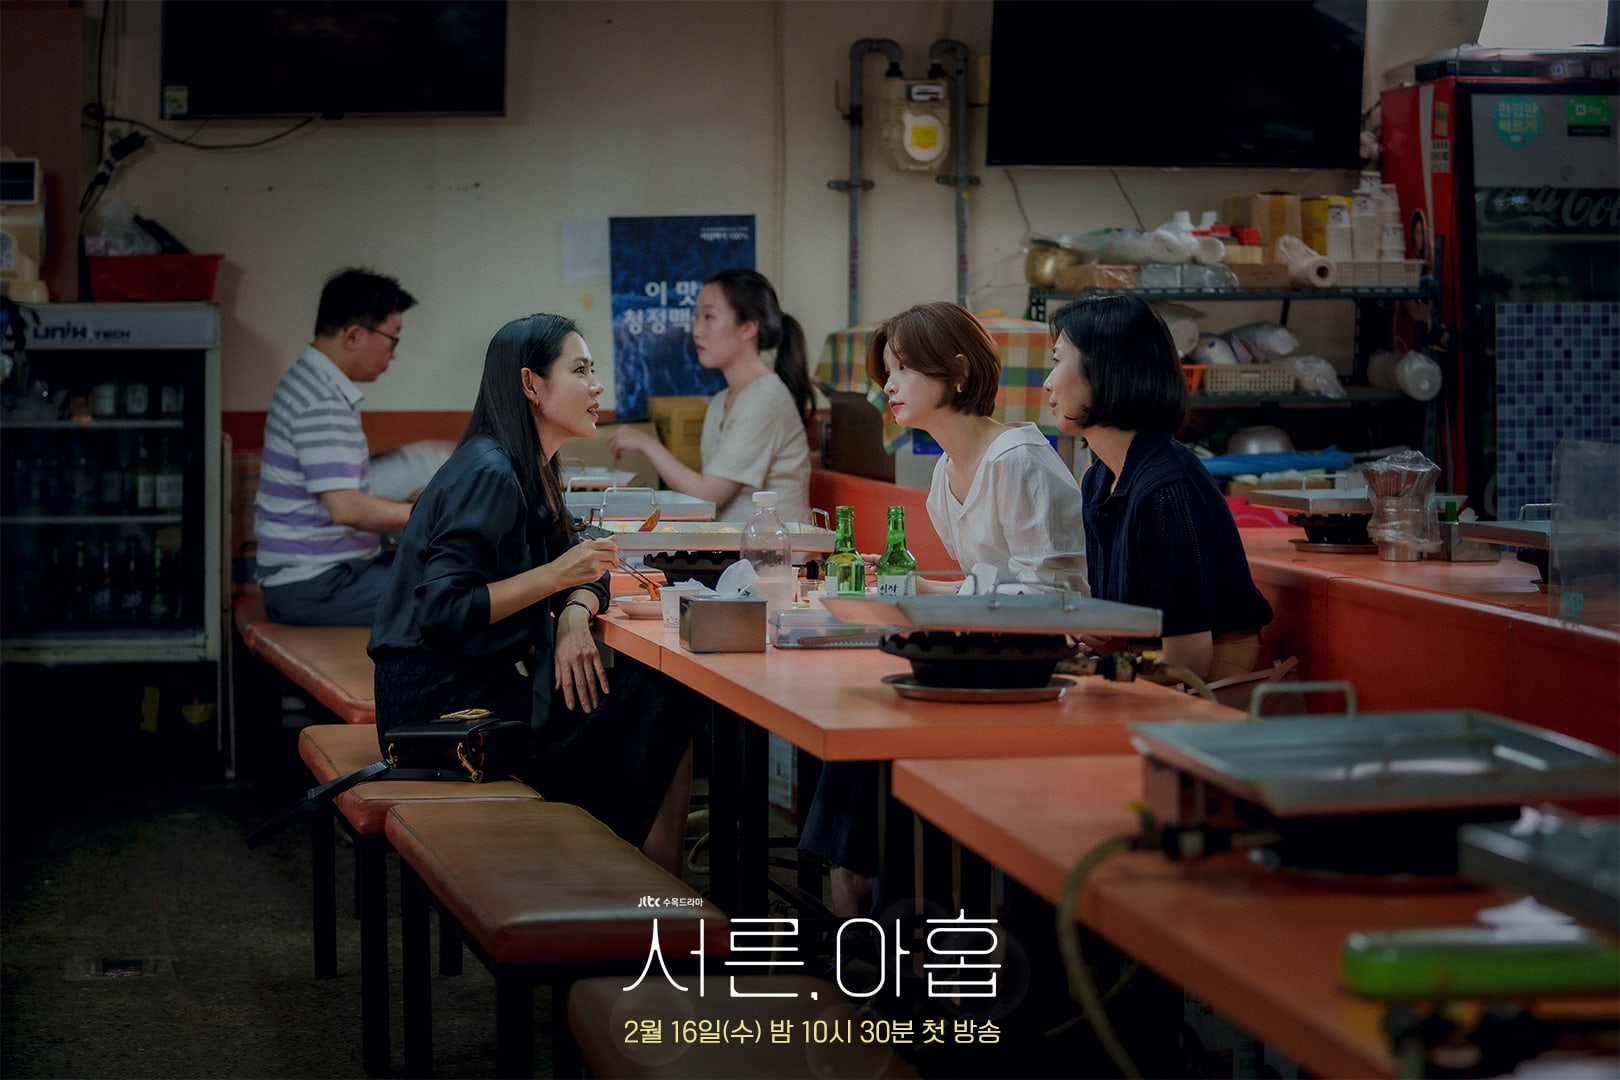 phim 39 Son ye Jin Kim Ji Hyun Jeon Mi Do 03 - 39: Phim tâm lý về cuộc đời người phụ nữ trước ngưỡng tuổi 40